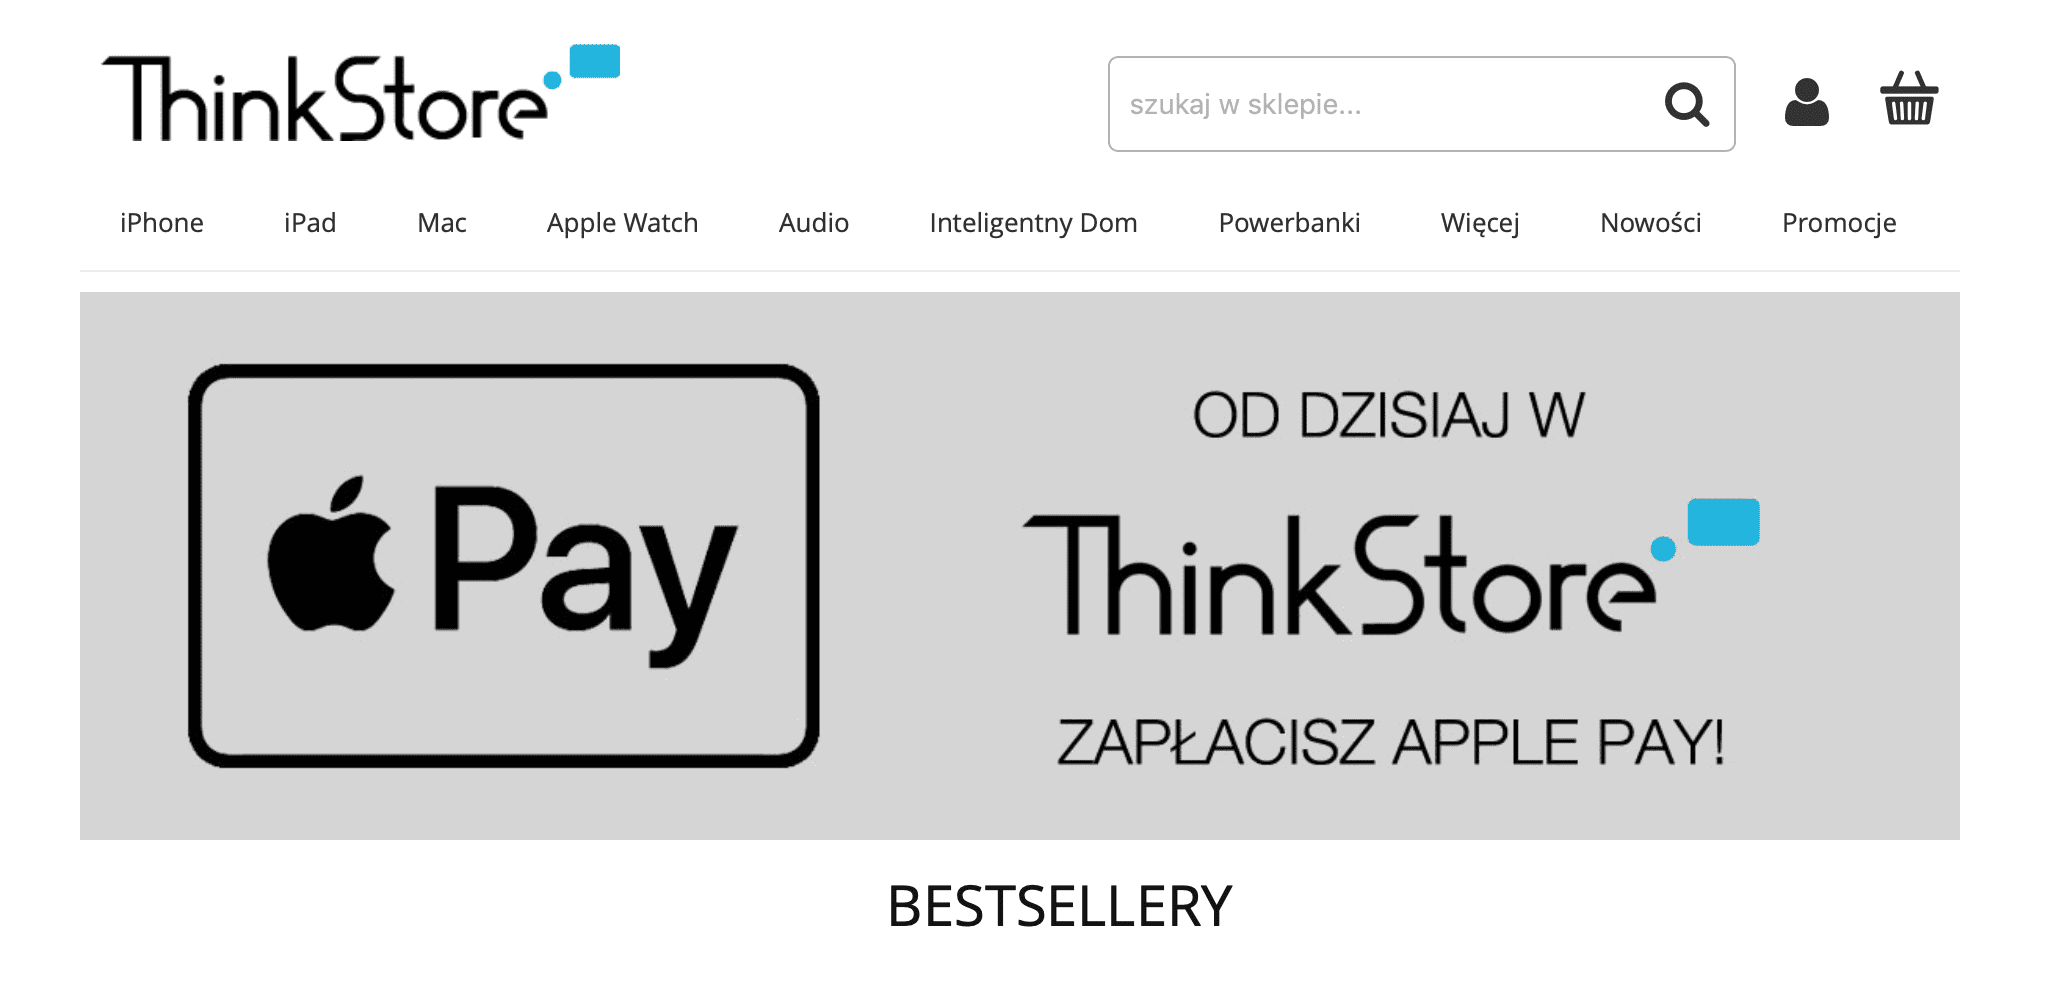 ThinkStore jako jeden z pierwszych sklepów internetowych w Polsce wdrożył Apple Pay ciekawostki ThinkStore, sklep ThinkStore, polski sklep z apple Pay, iPhone, iPad, Apple Pay, Apple  W ThinkStore ? specjalistycznym sklepie z akcesoriami do sprzętu Apple, można już płacić za pomocą Apple Pay. AP 1